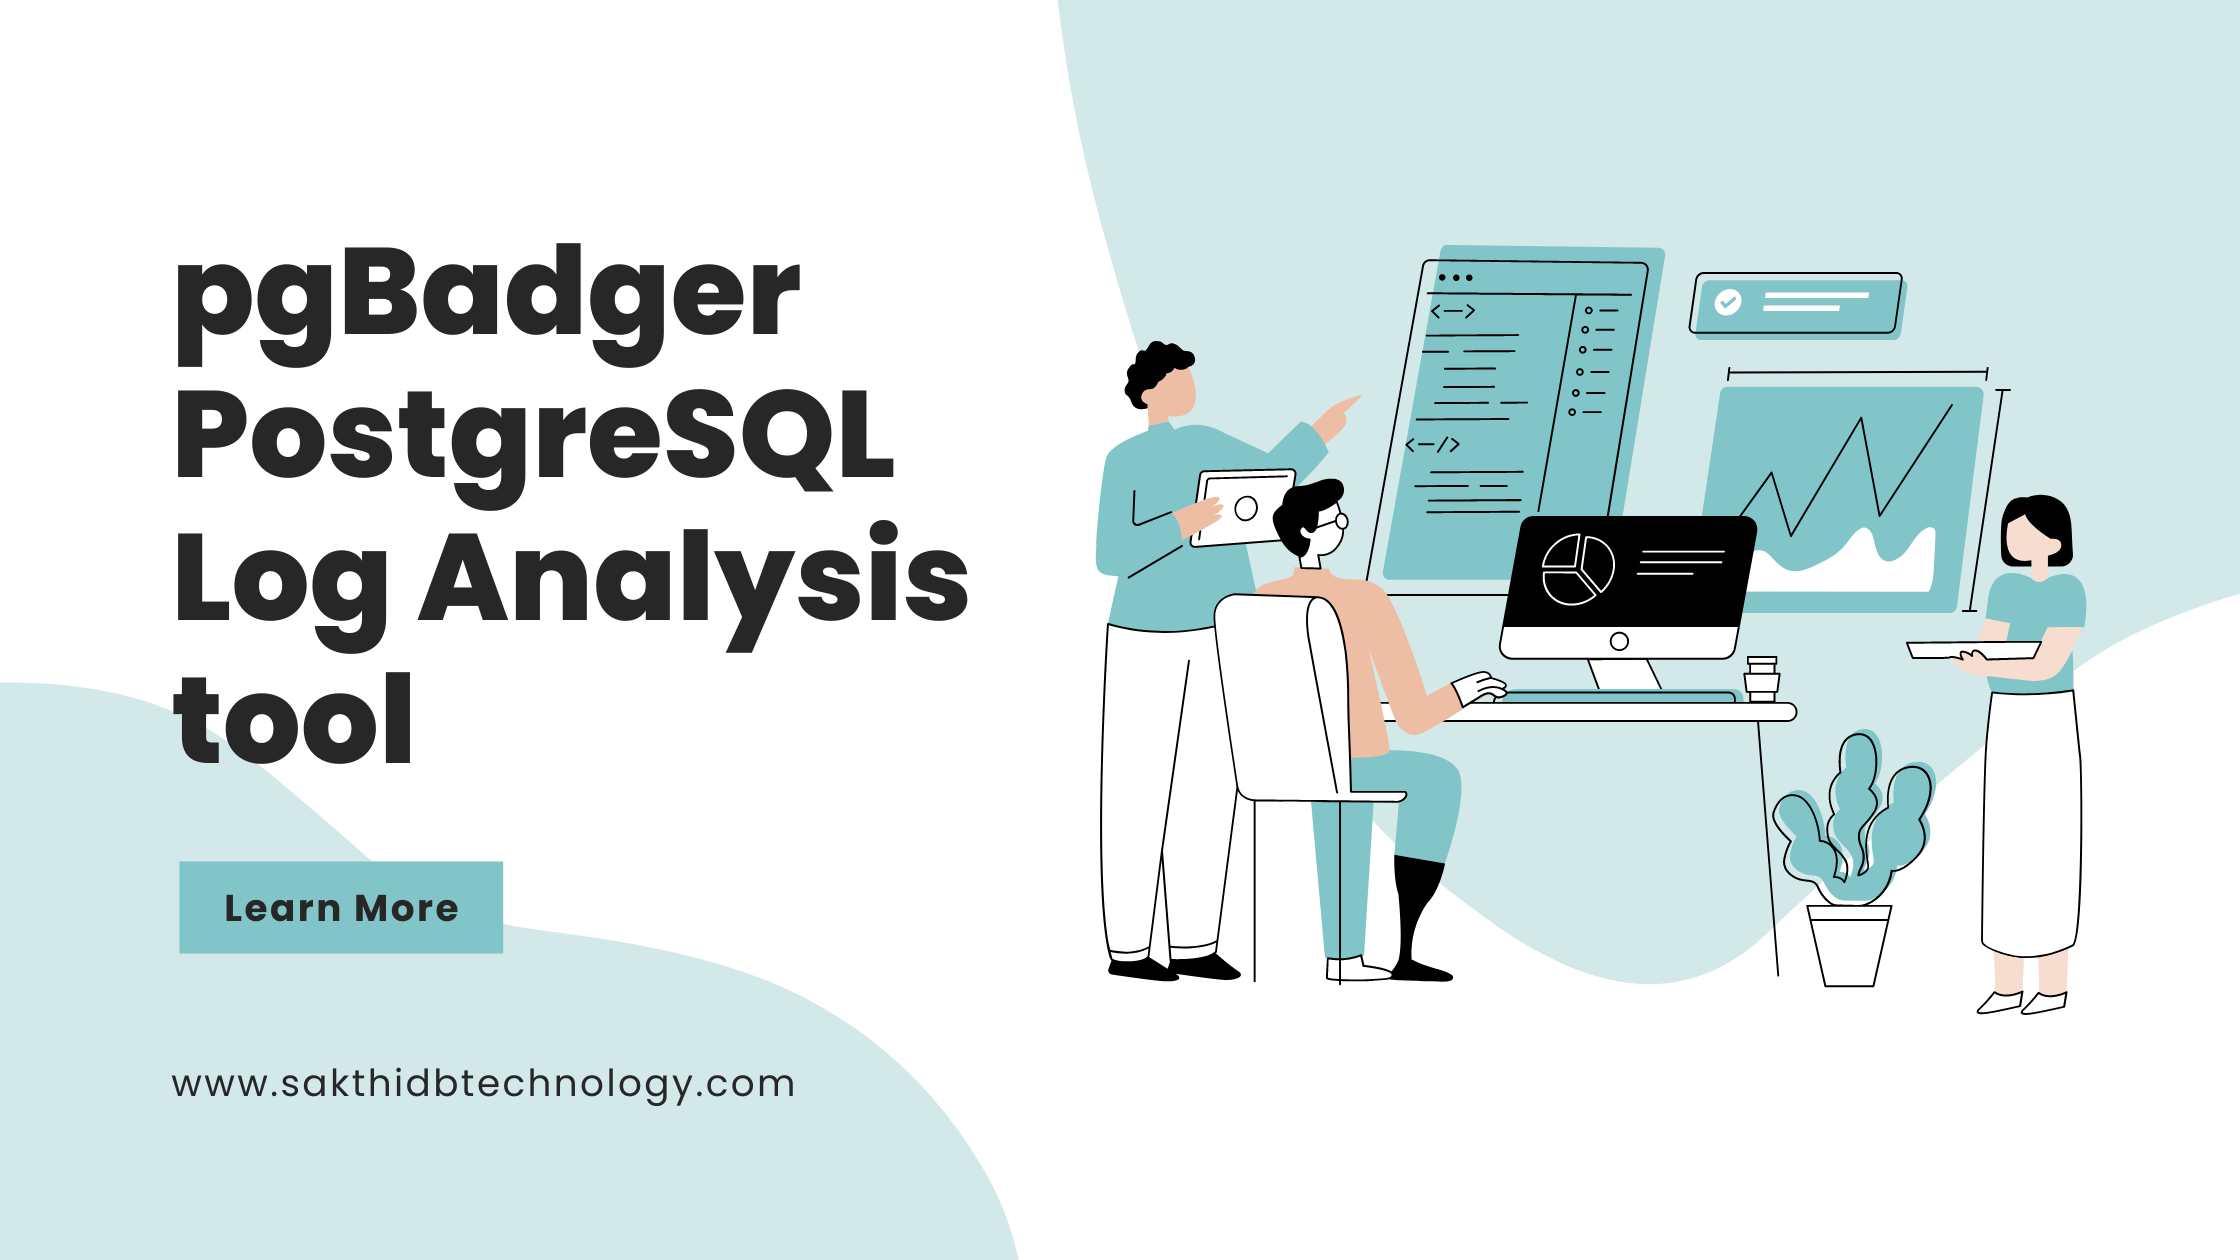 pgBadger PostgreSQL Log Analysis tool